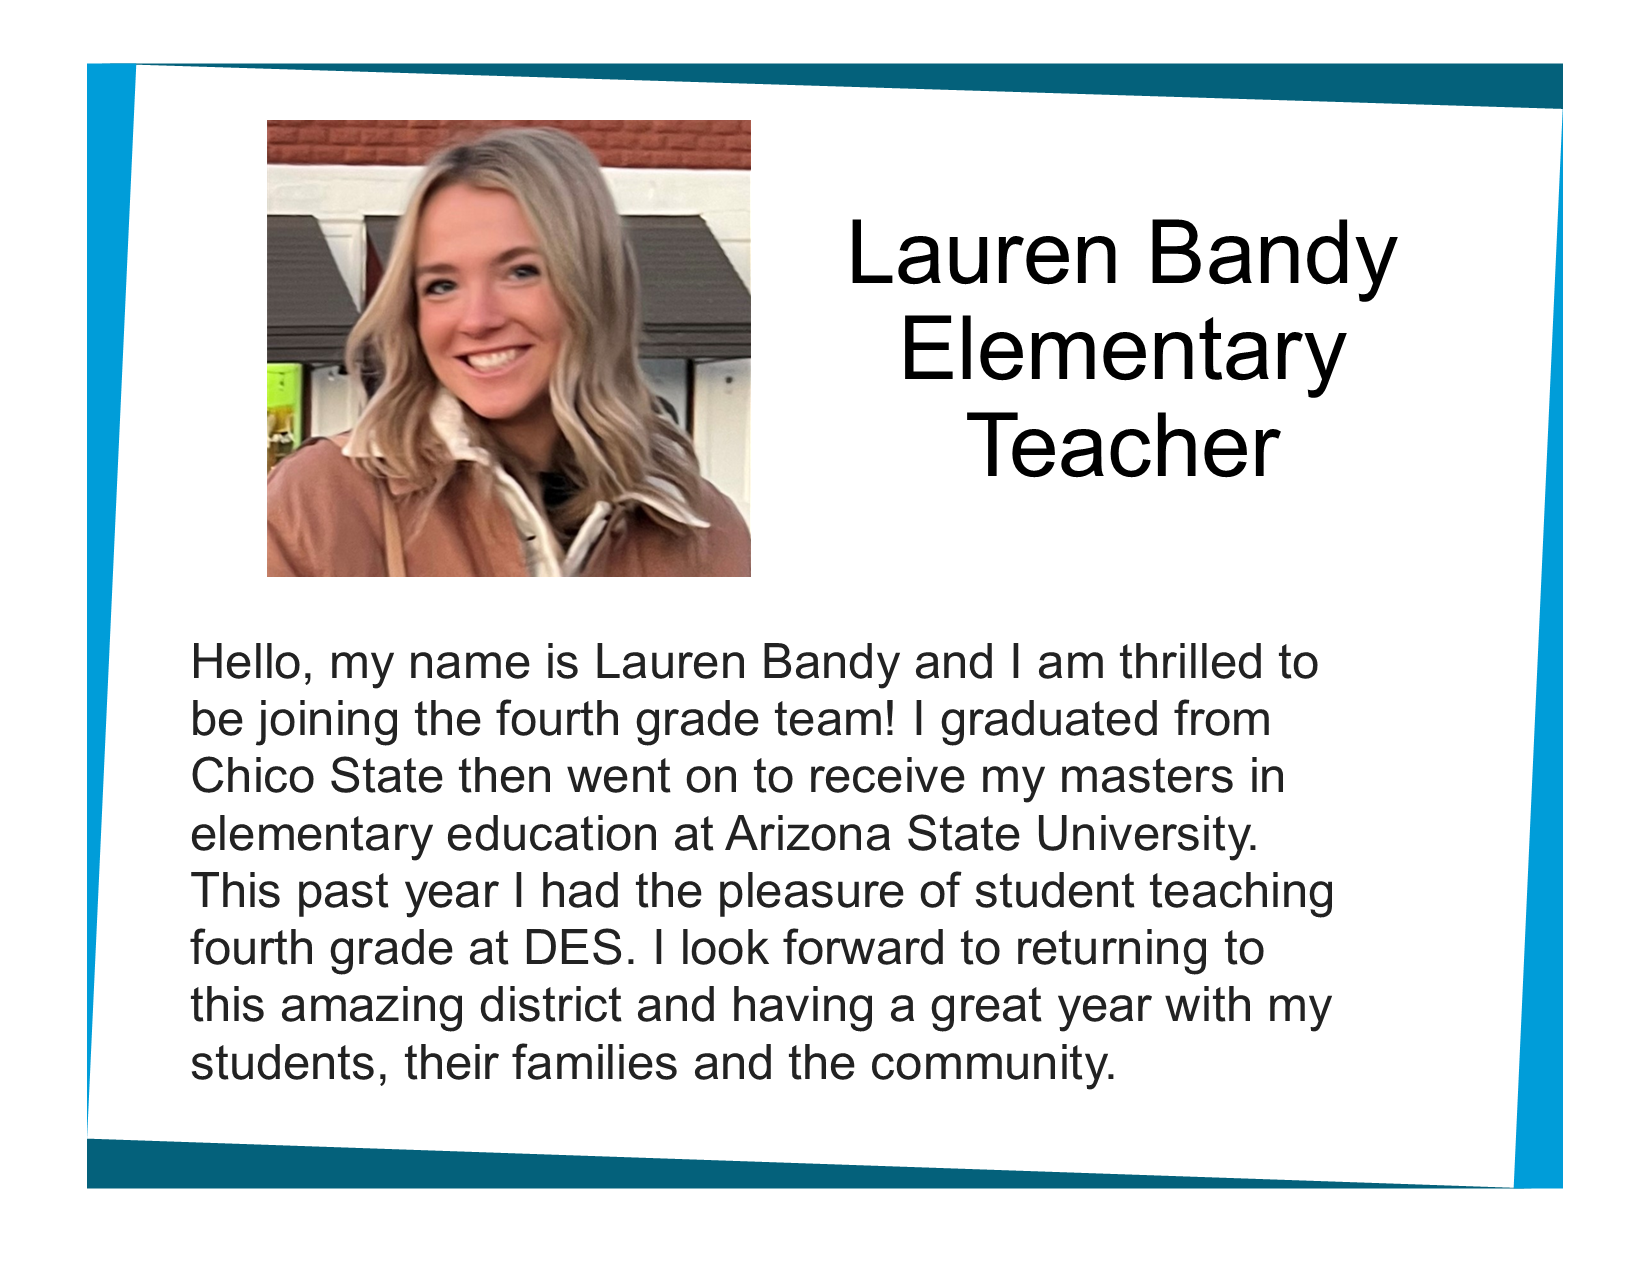 Picture and bio of teacher Lauren Bandy 